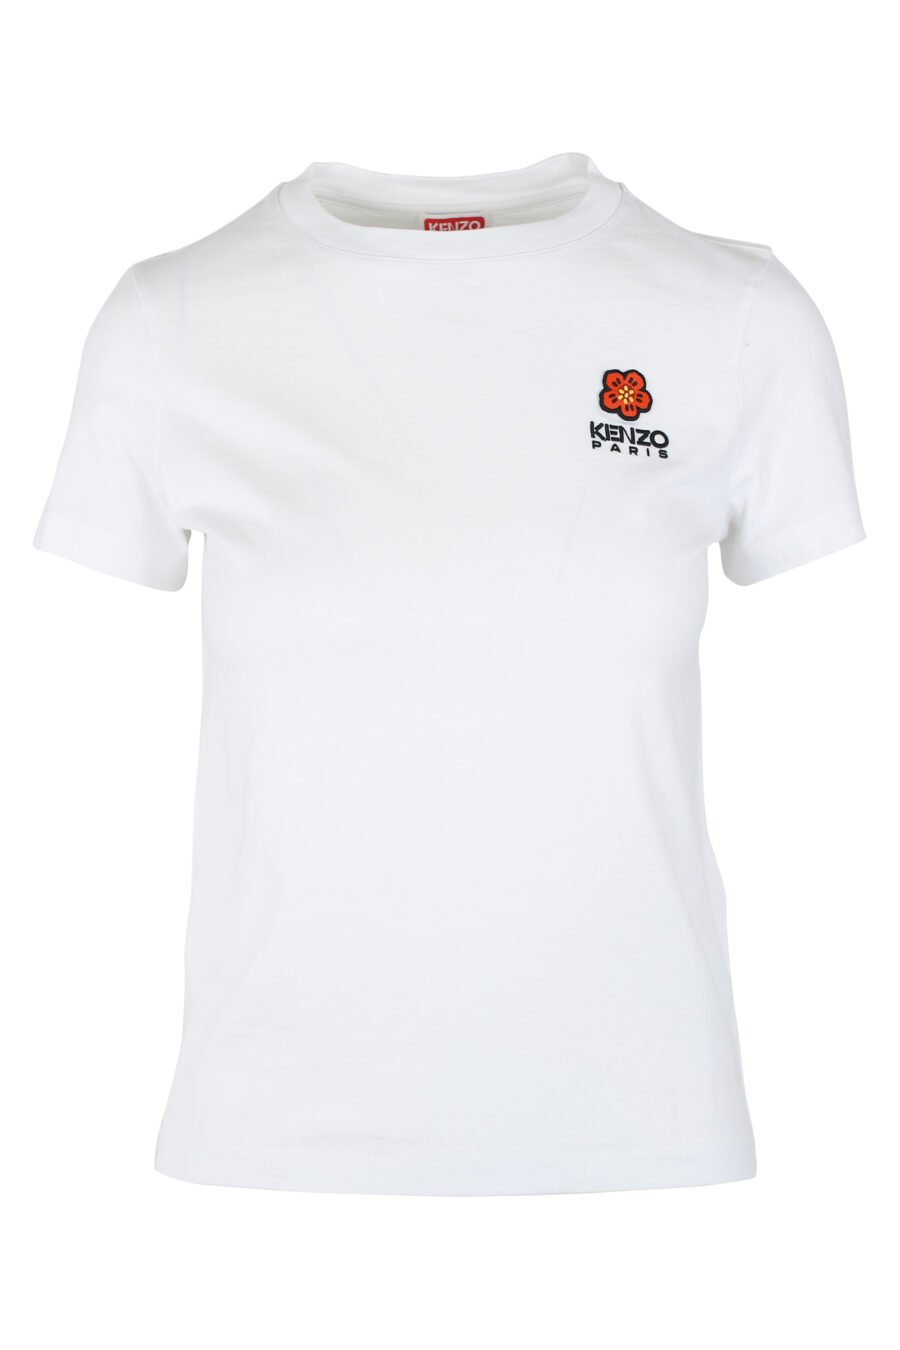 T-shirt branca com minilogo vermelho - IMG 9526